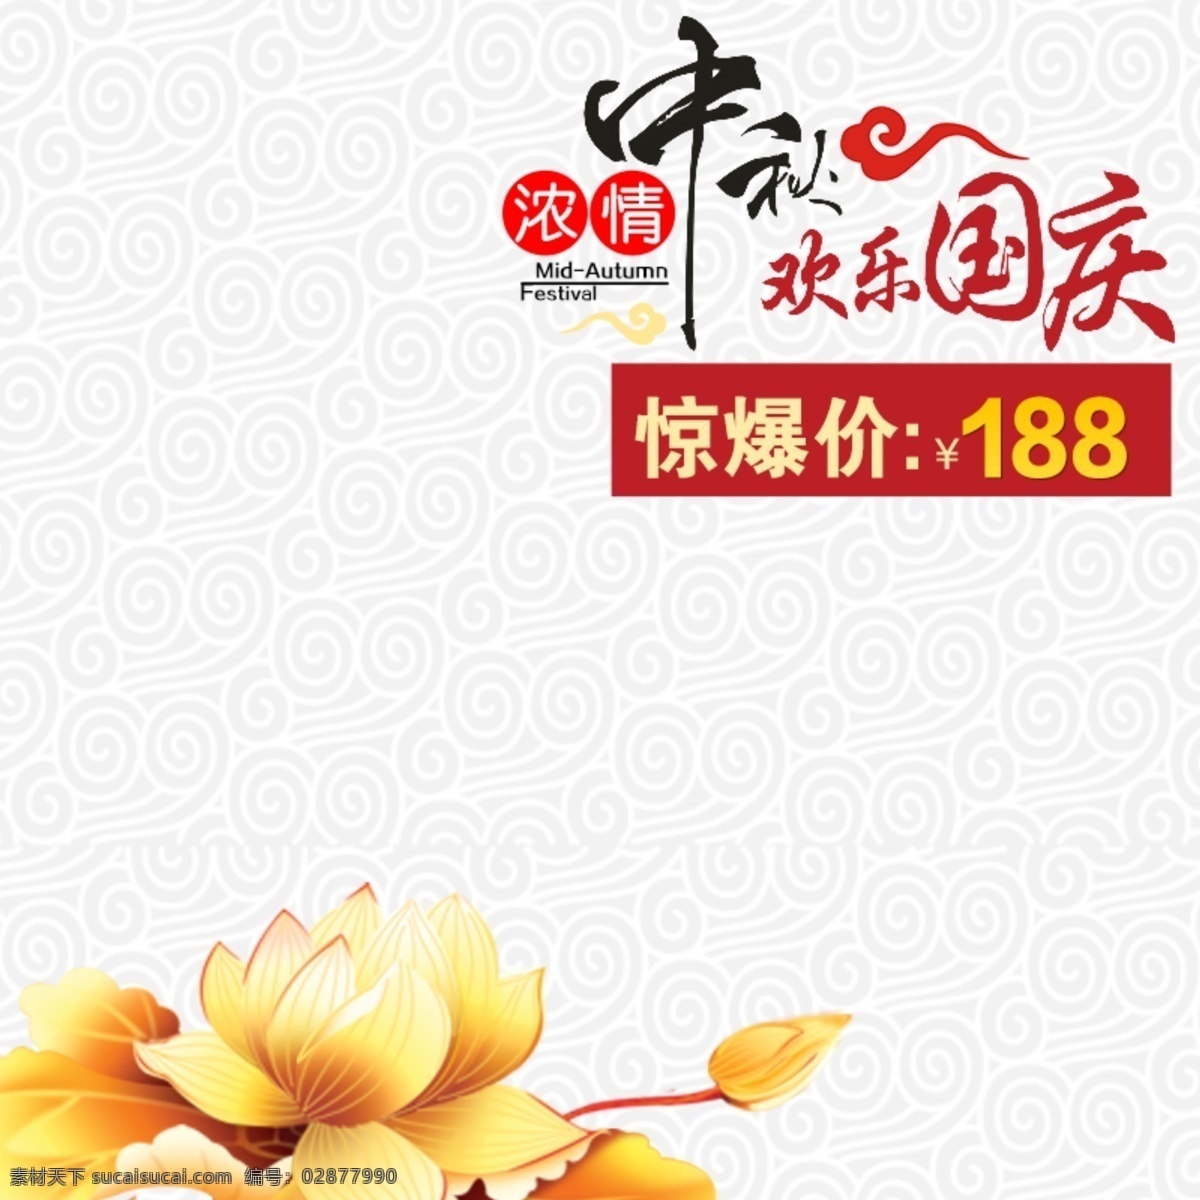 中国风模板 中国风 中秋节 荷花 底纹 传统节日 白色